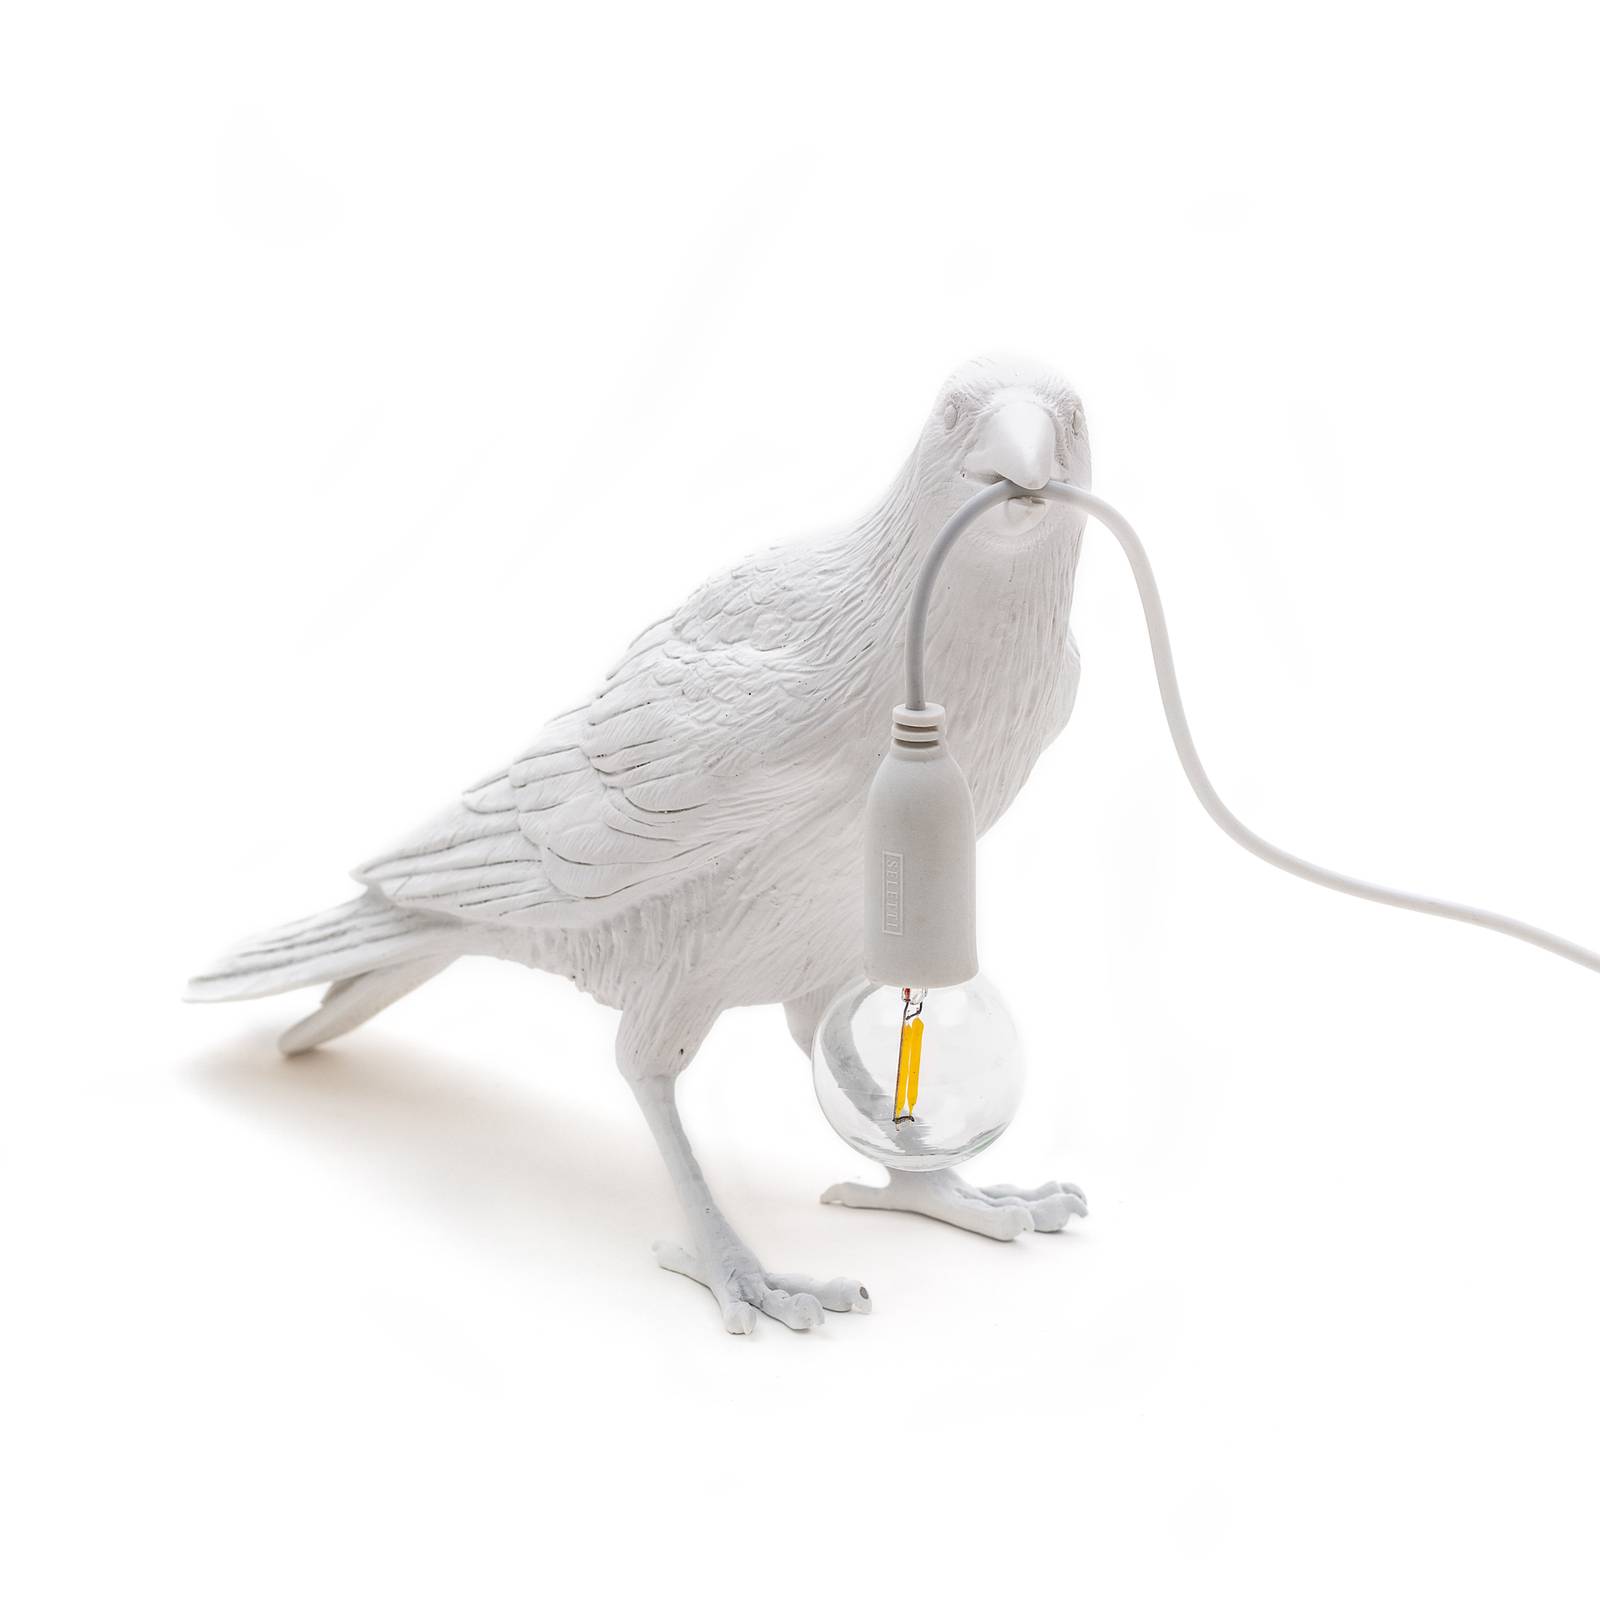 SELETTI LED deko terasové světlo Bird Lamp, čekající, bílá